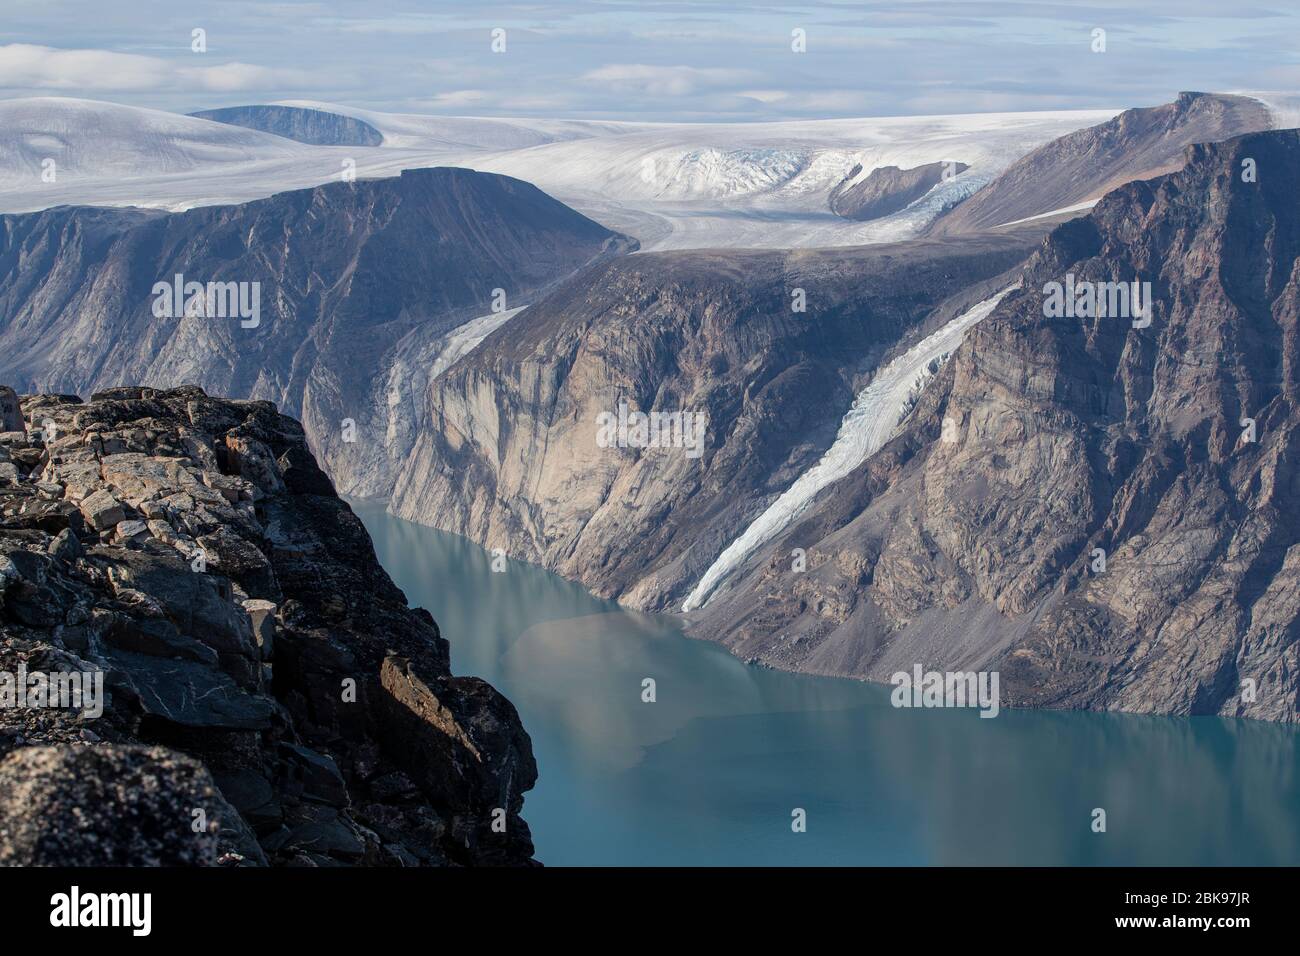 Paysage de l'île de Baffin, Canada Banque D'Images